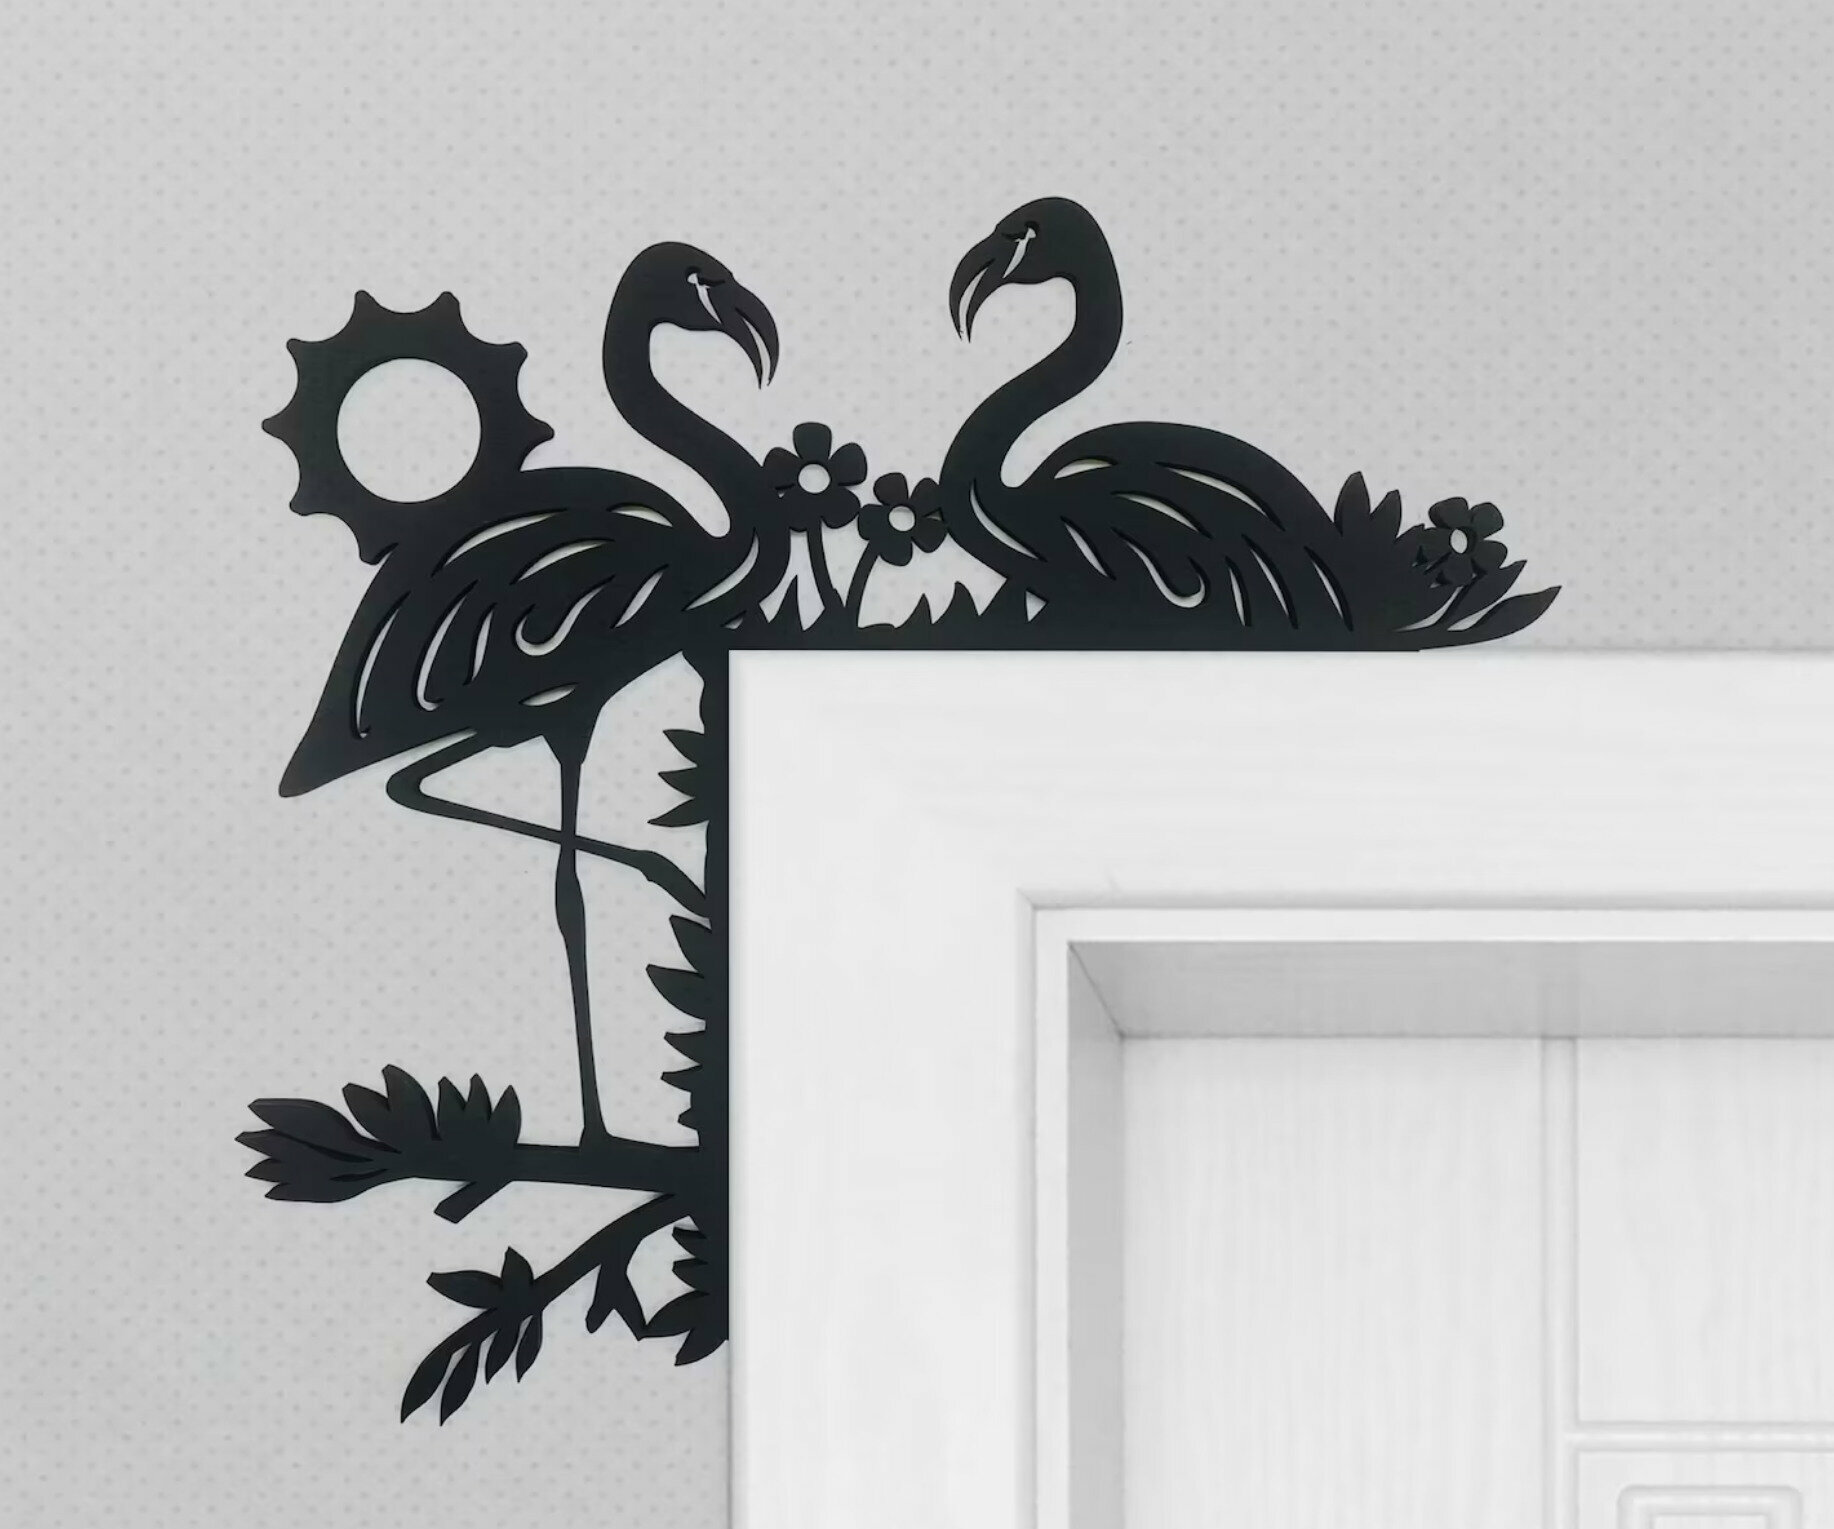 Панно 30х30 см 2 шт "Фламинго" декоративное настенное чёрное, декор на стену, картина